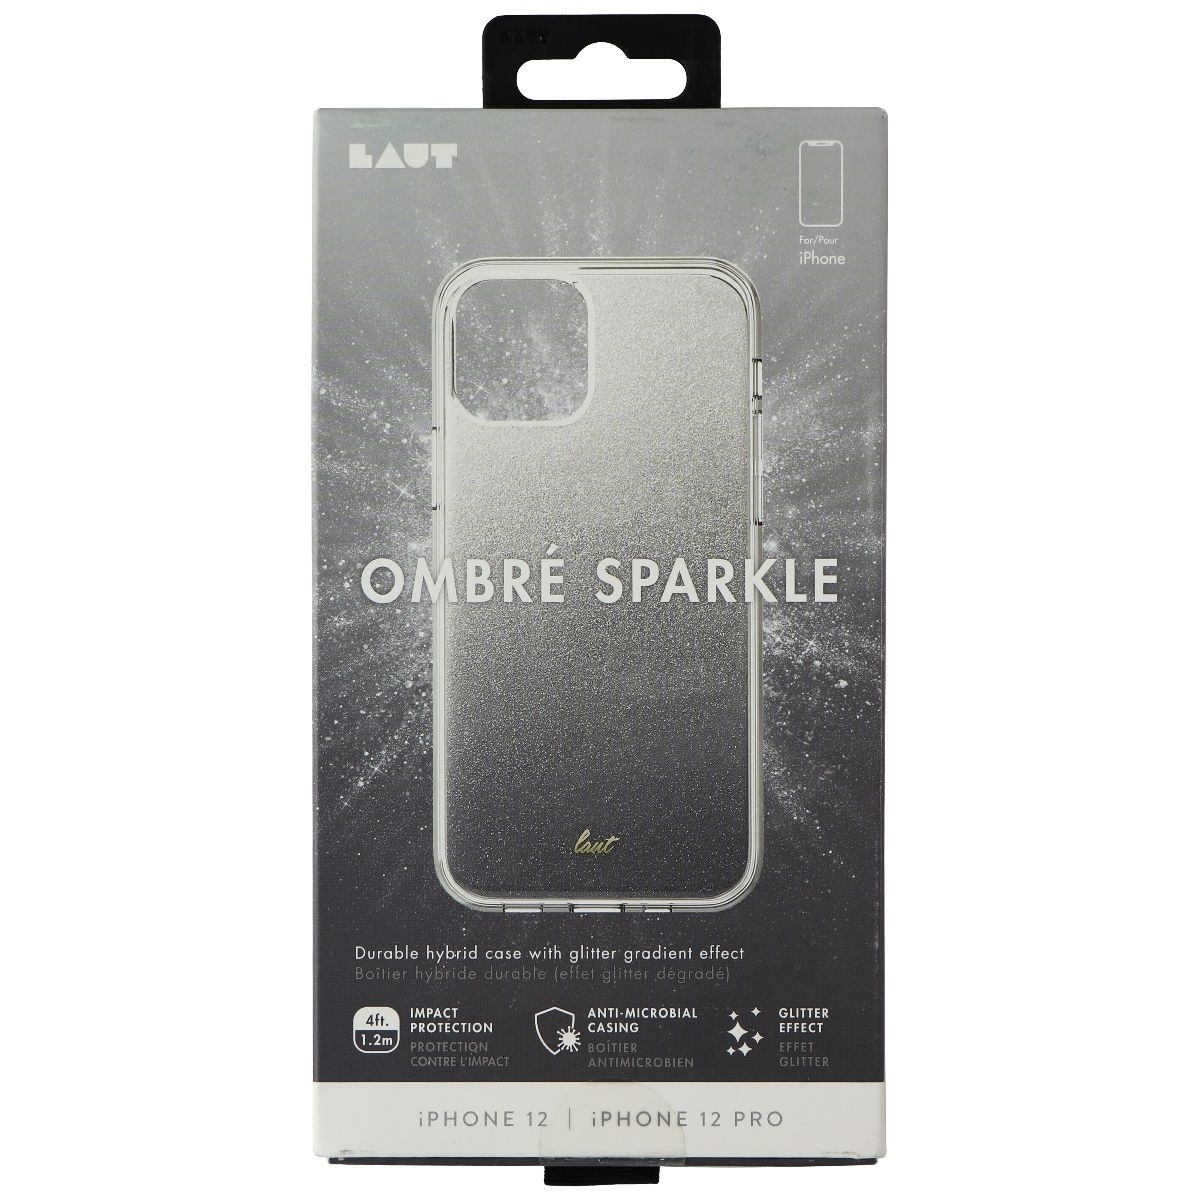 LAUT OMBRE SPARKLE Series Case For IPhone 12/12 Pro - Black